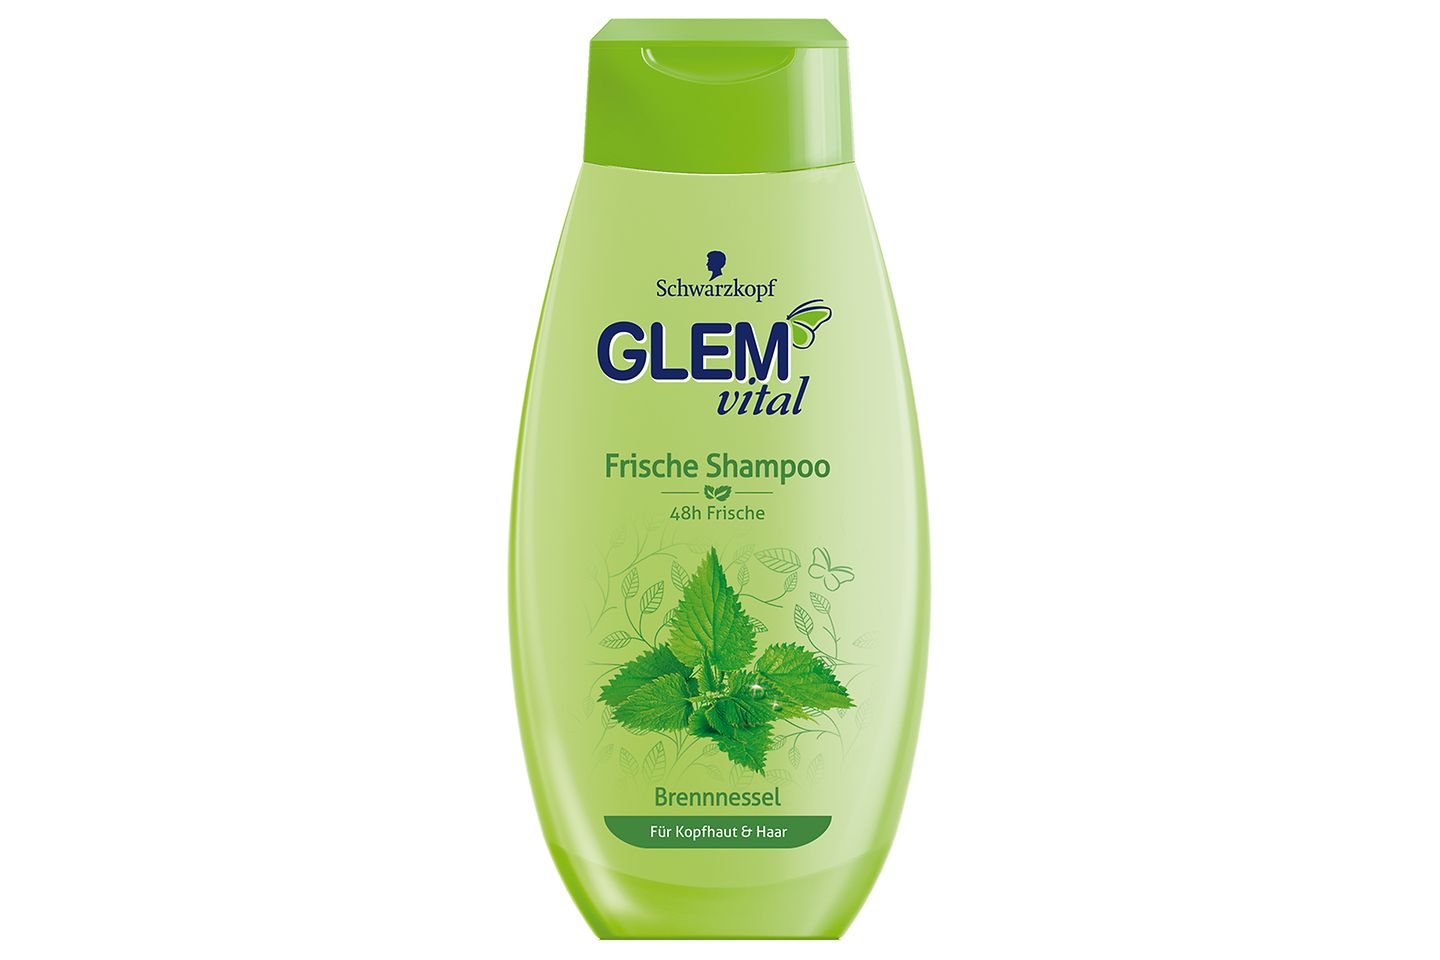 Glem vital Frische Shampoo Brennnessel